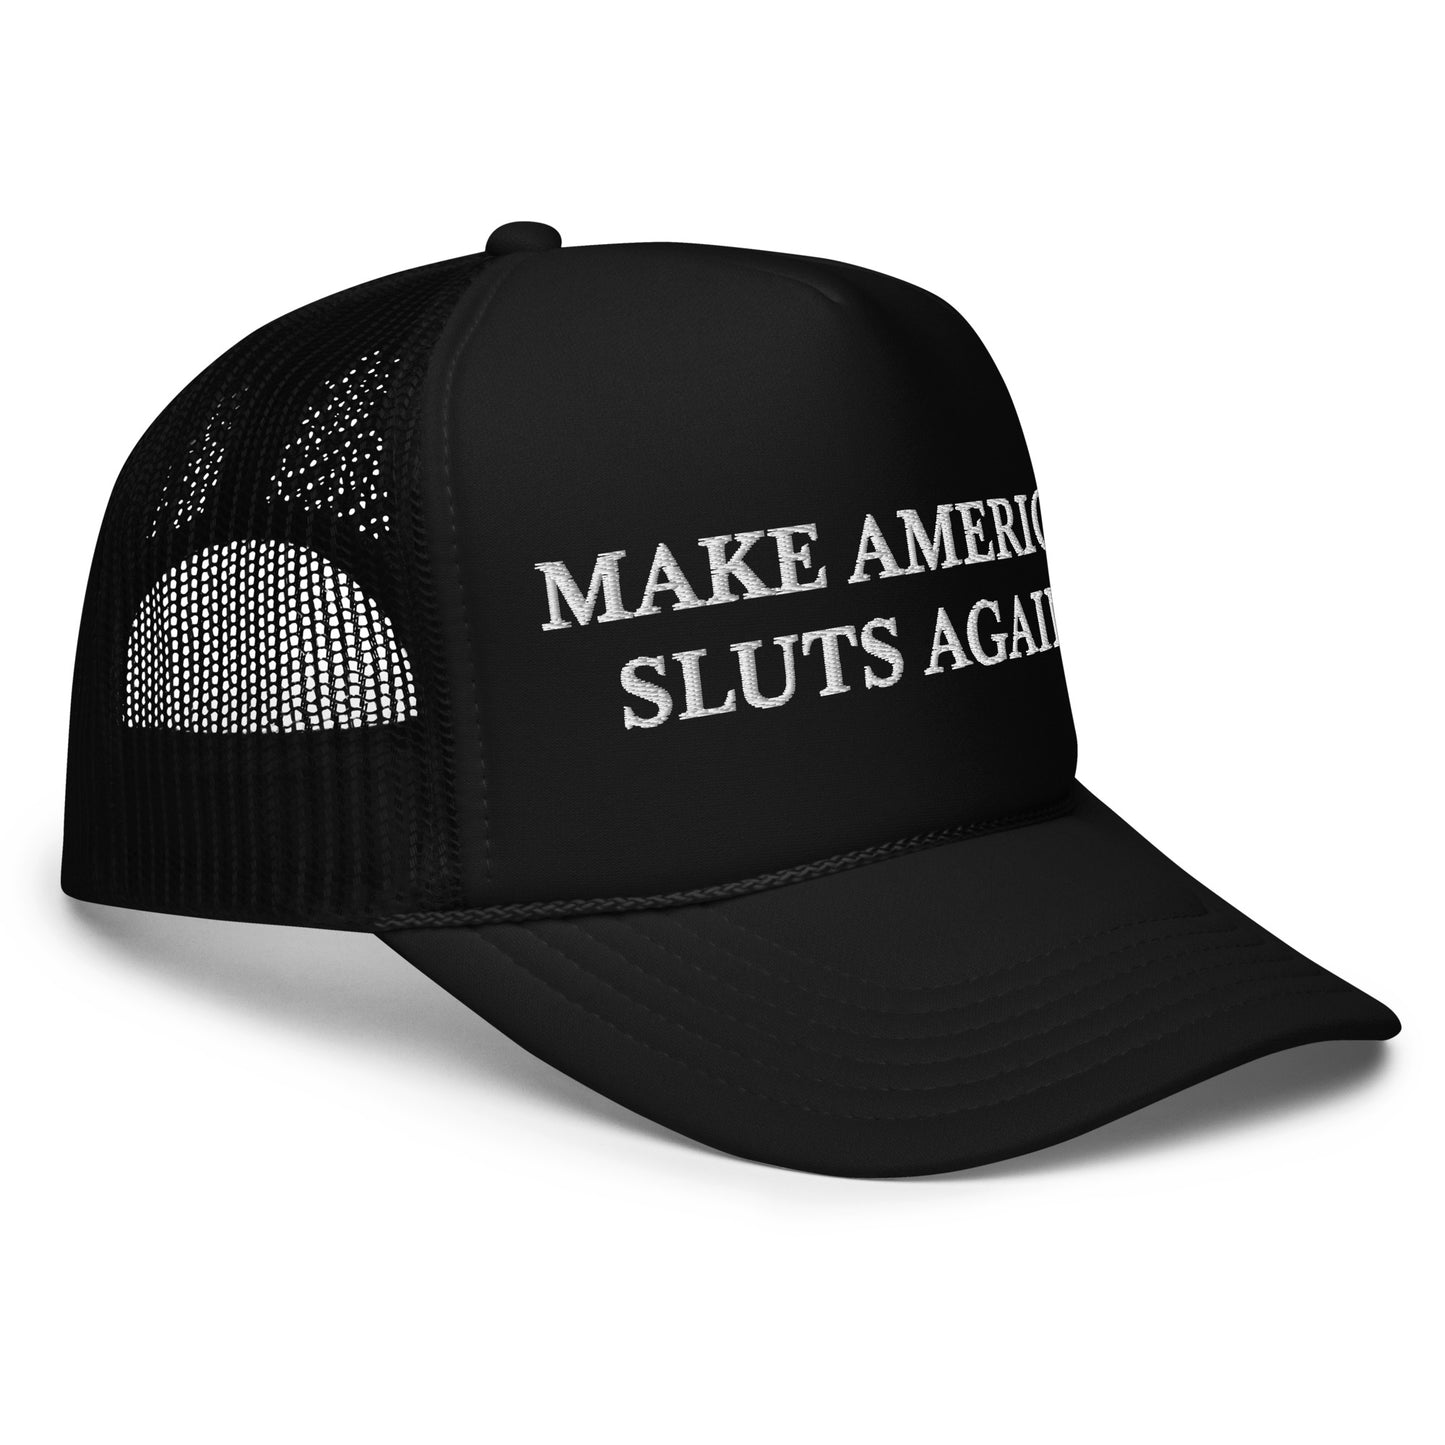 MAKE AMERI SLUTS AGAIN hat